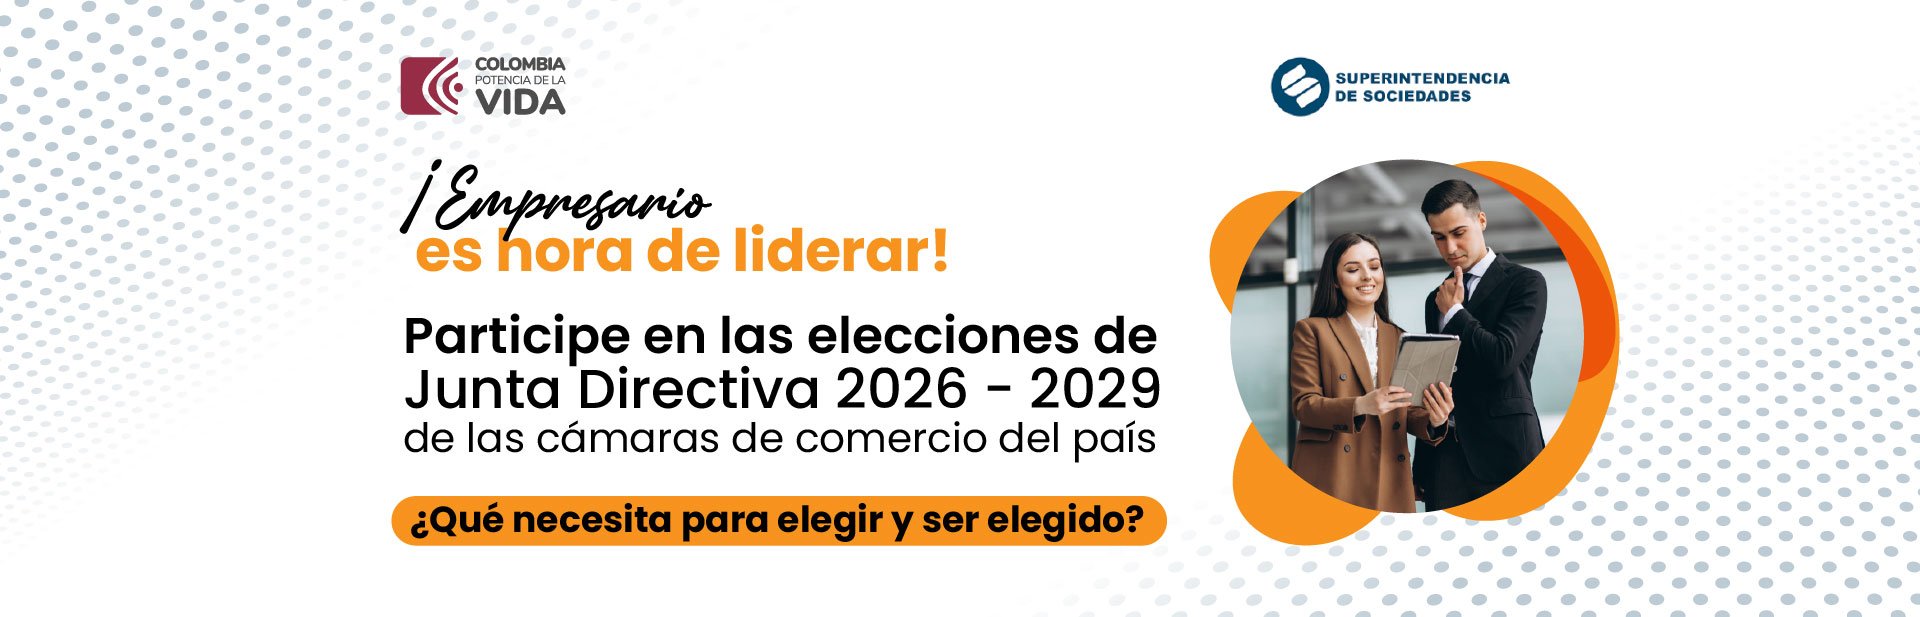 Invitación a Participar en las elecciones de Junta Directiva 2026-2029